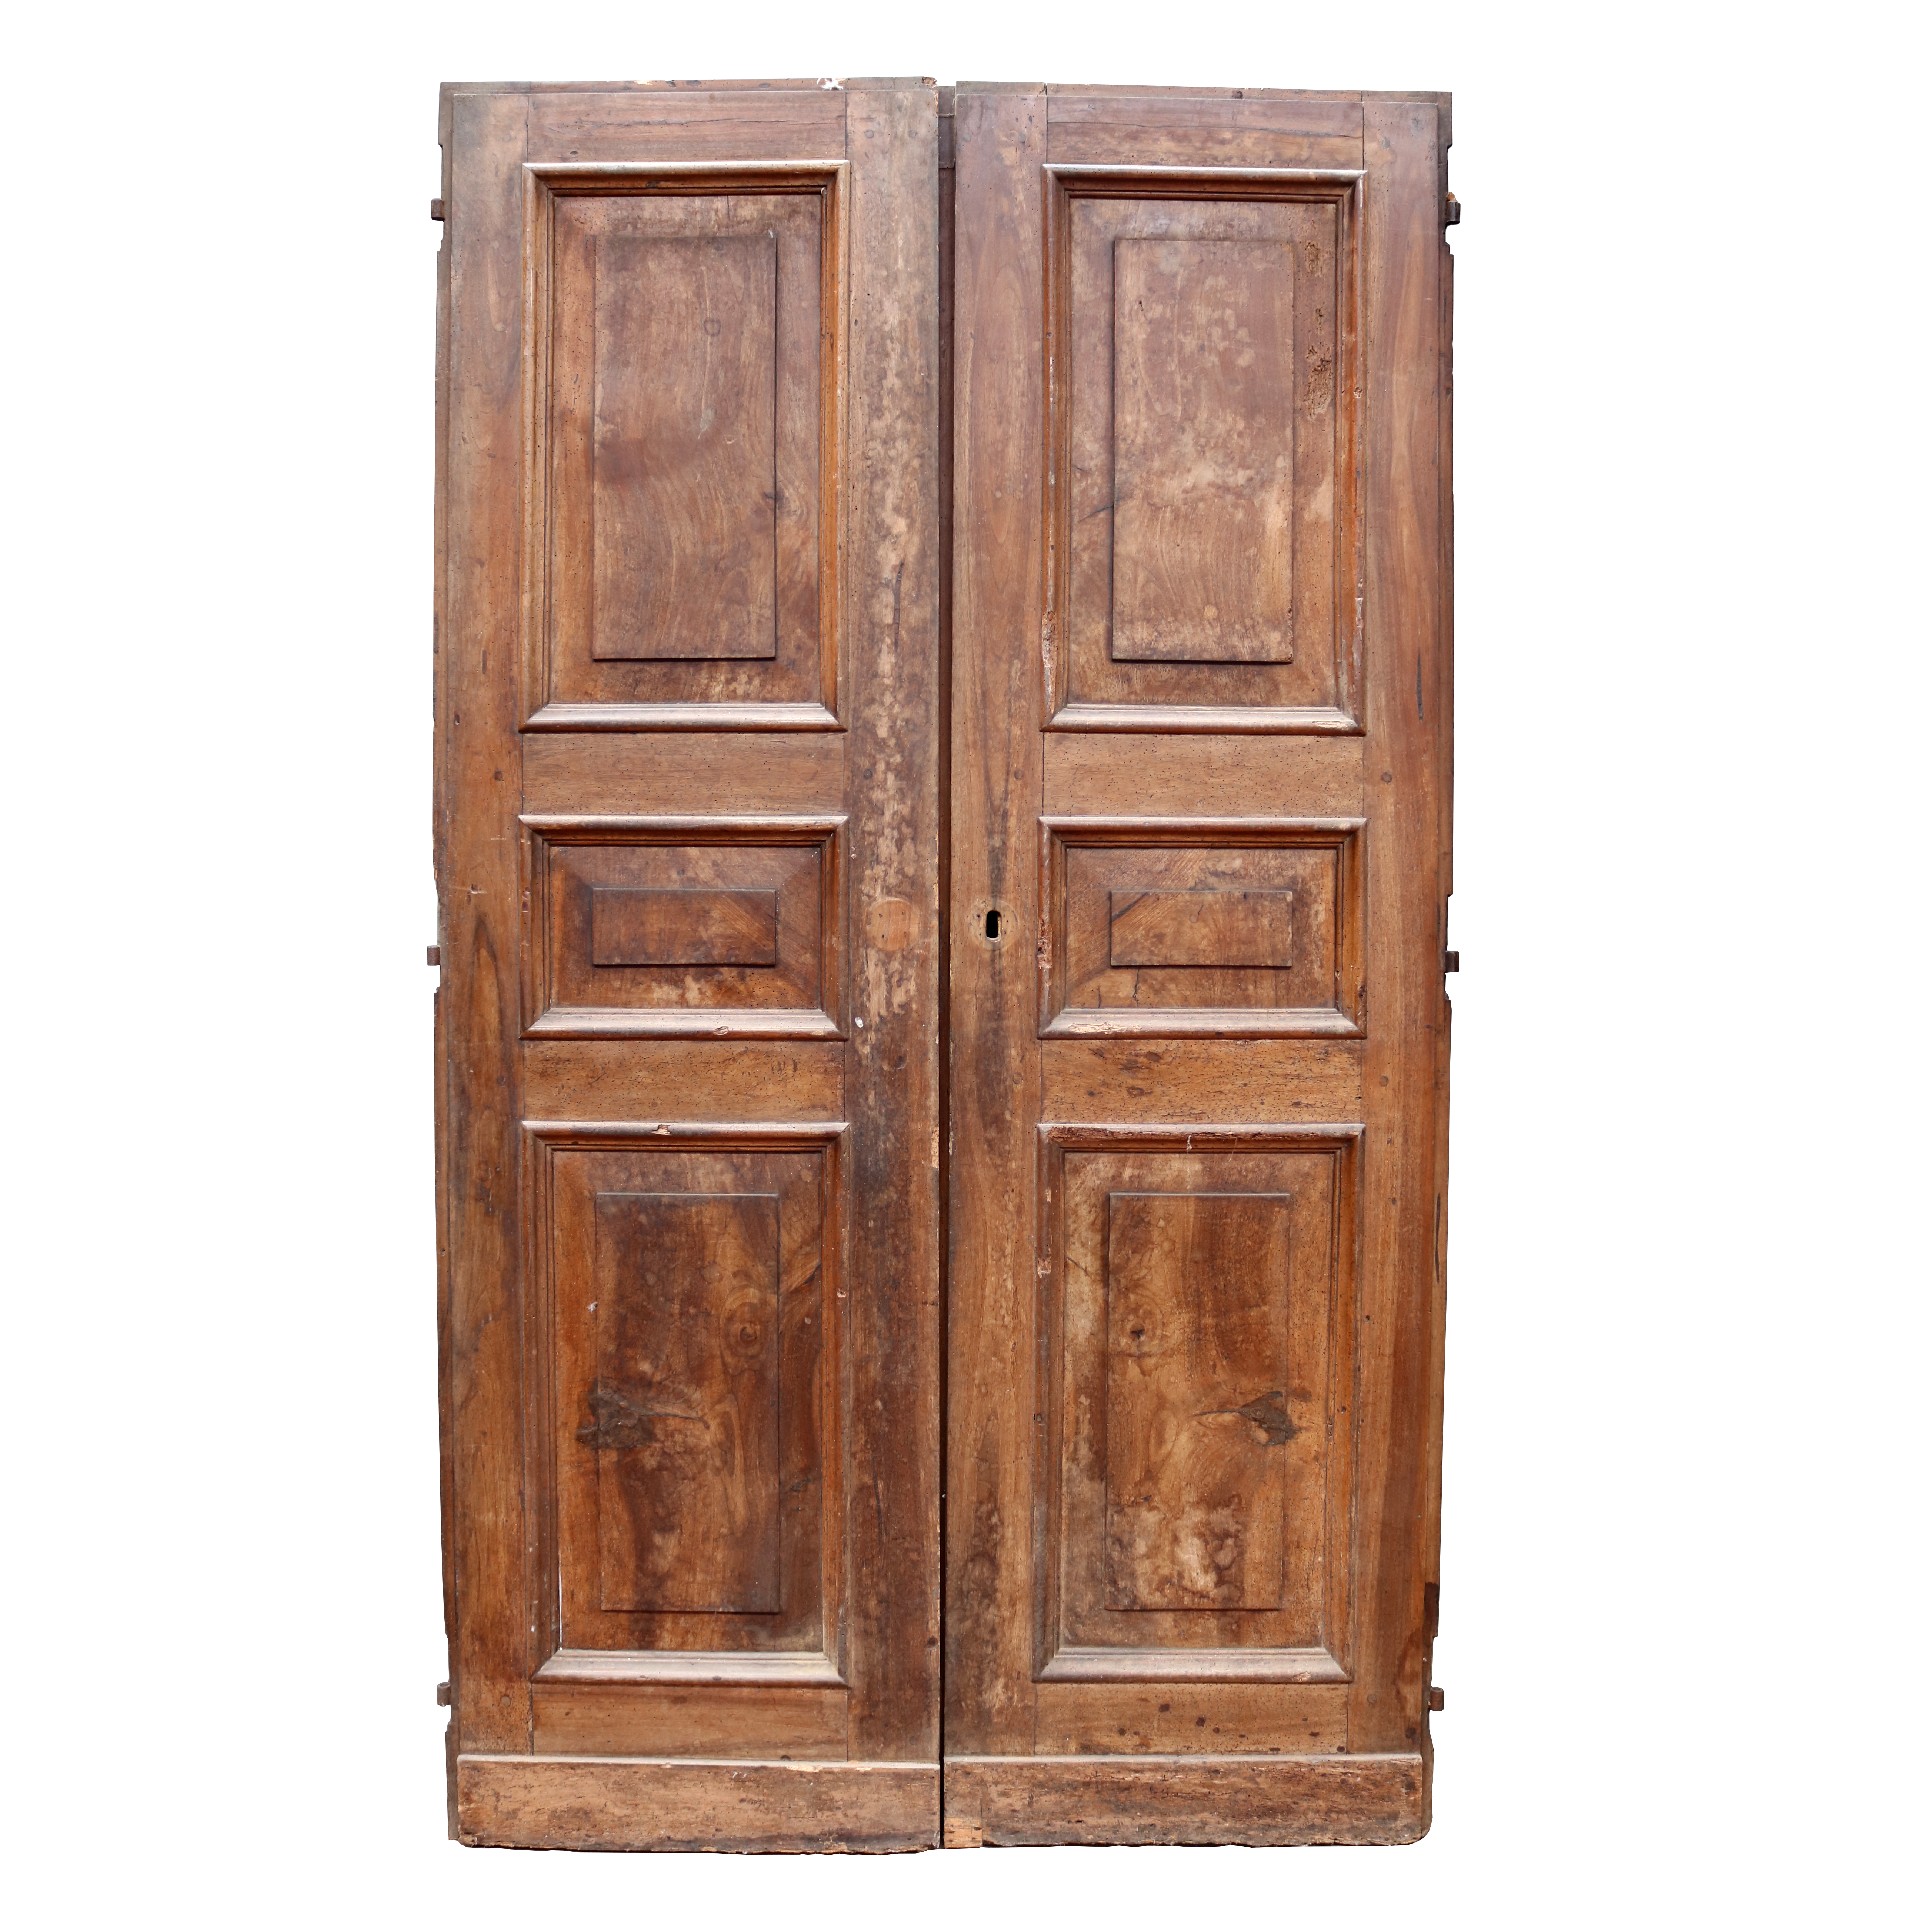 Antica porta in legno.  - Porte Rare - Porte Antiche - Prodotti - Antichità Fiorillo